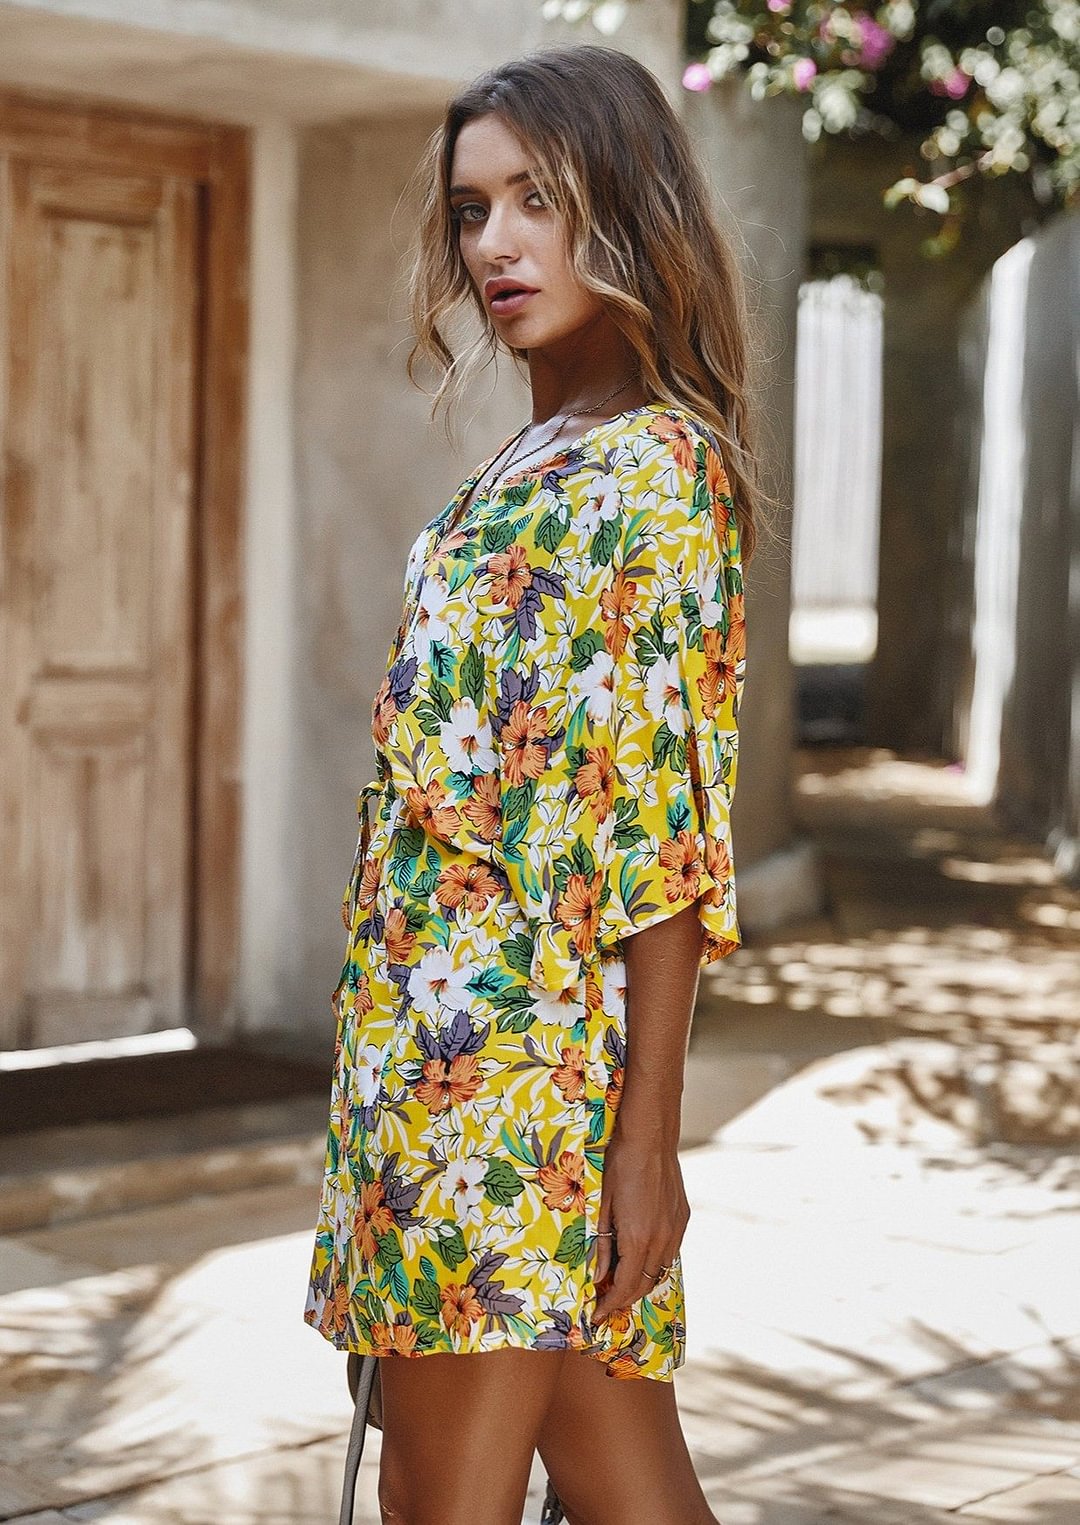 Women’s Floral Print Mini Dresses丨August Lemonade